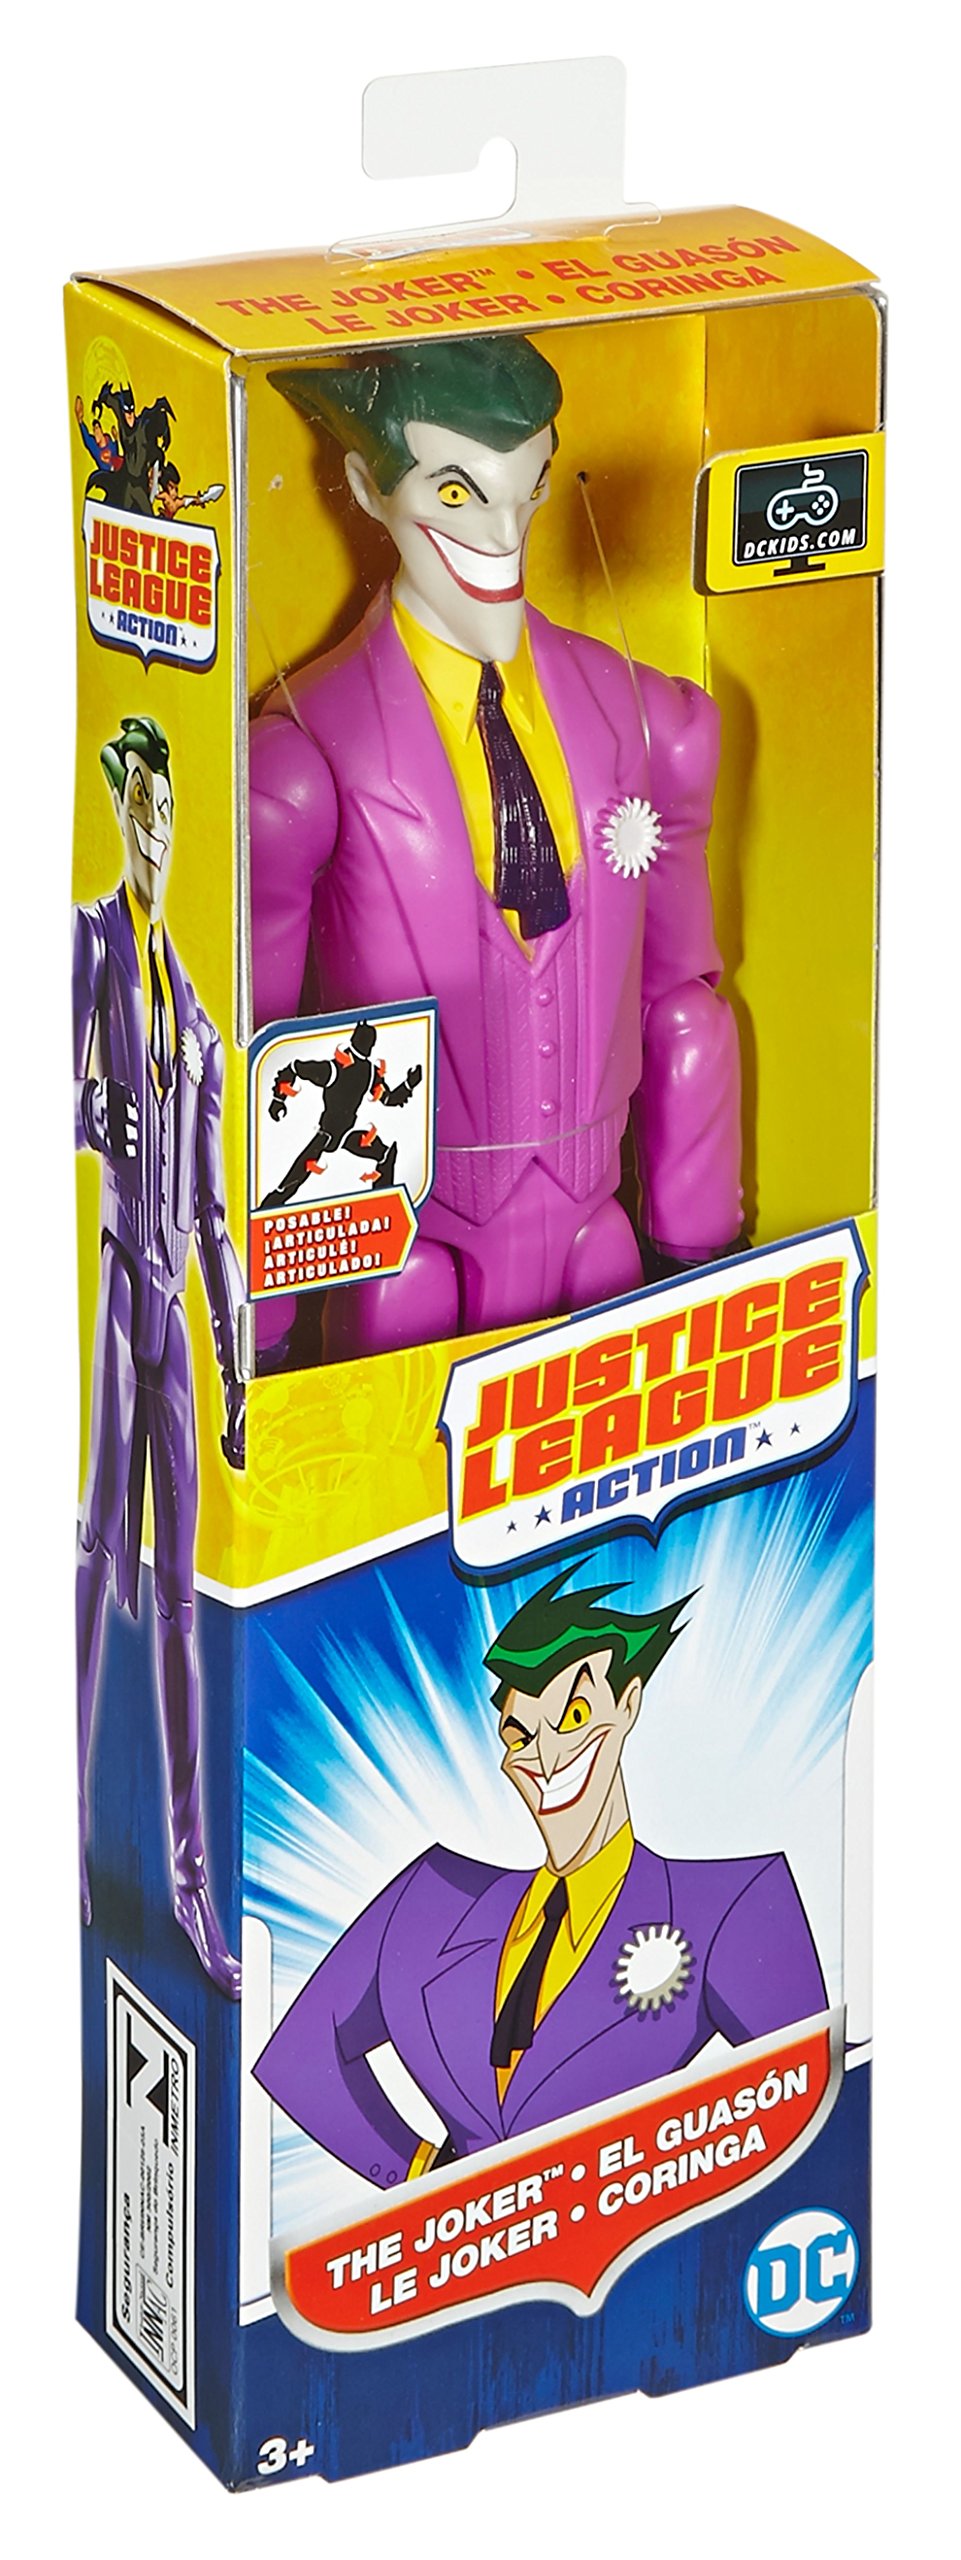 Mattel DC Justice League Action The Joker Action Figure, 12